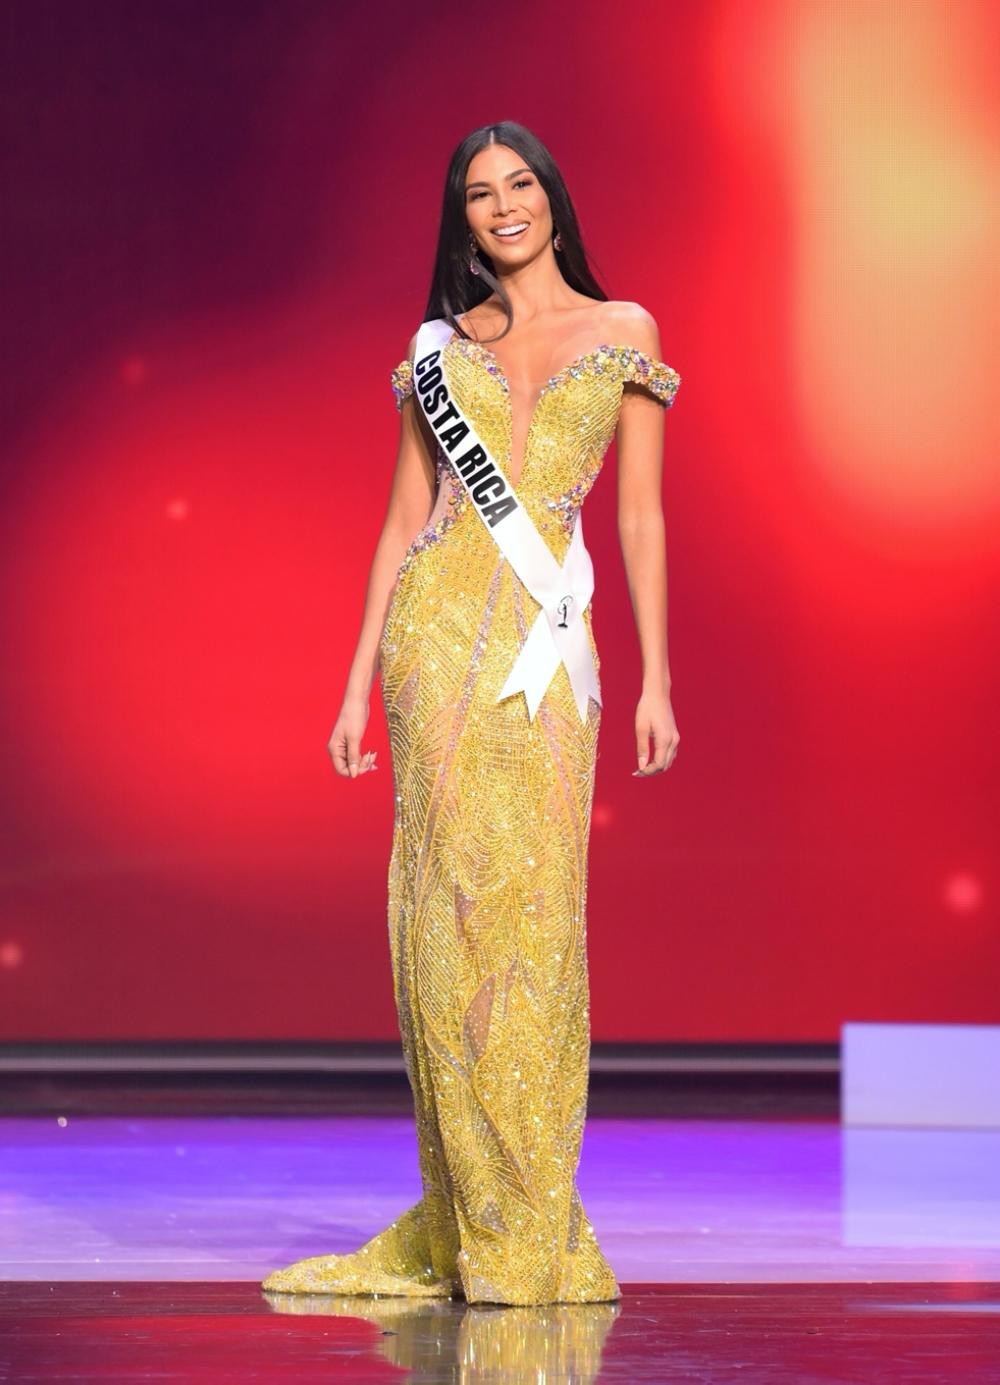 Vị trí thứ 4 thuộc về Hoa hậu Costa Rica Ivonne Cerdas